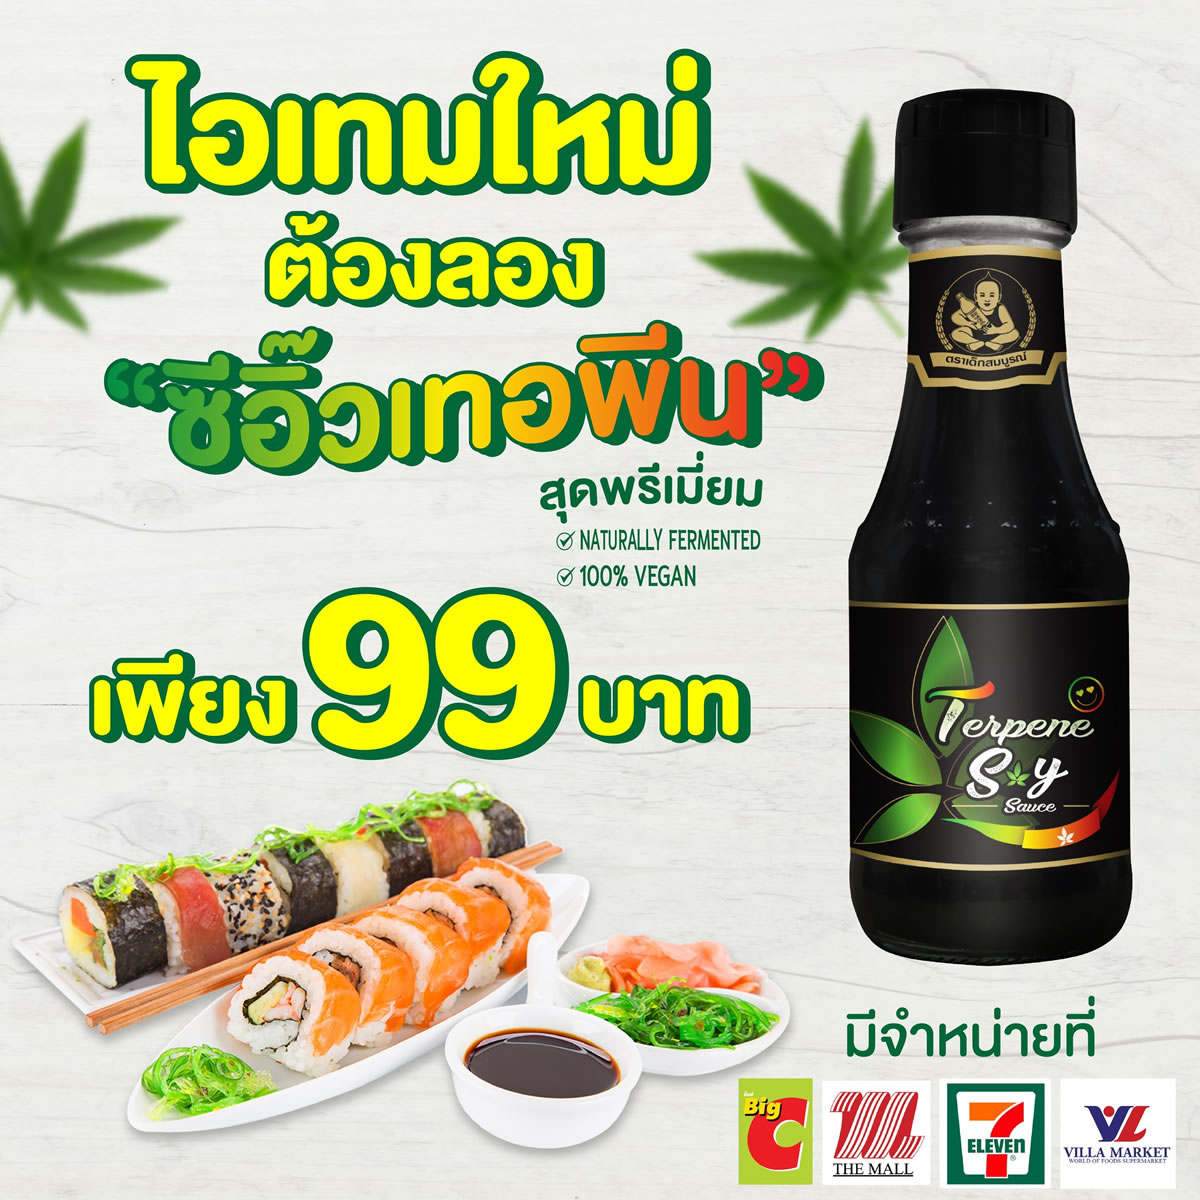 タイではテルペン醤油が販売されている！ところでテルペンとは？